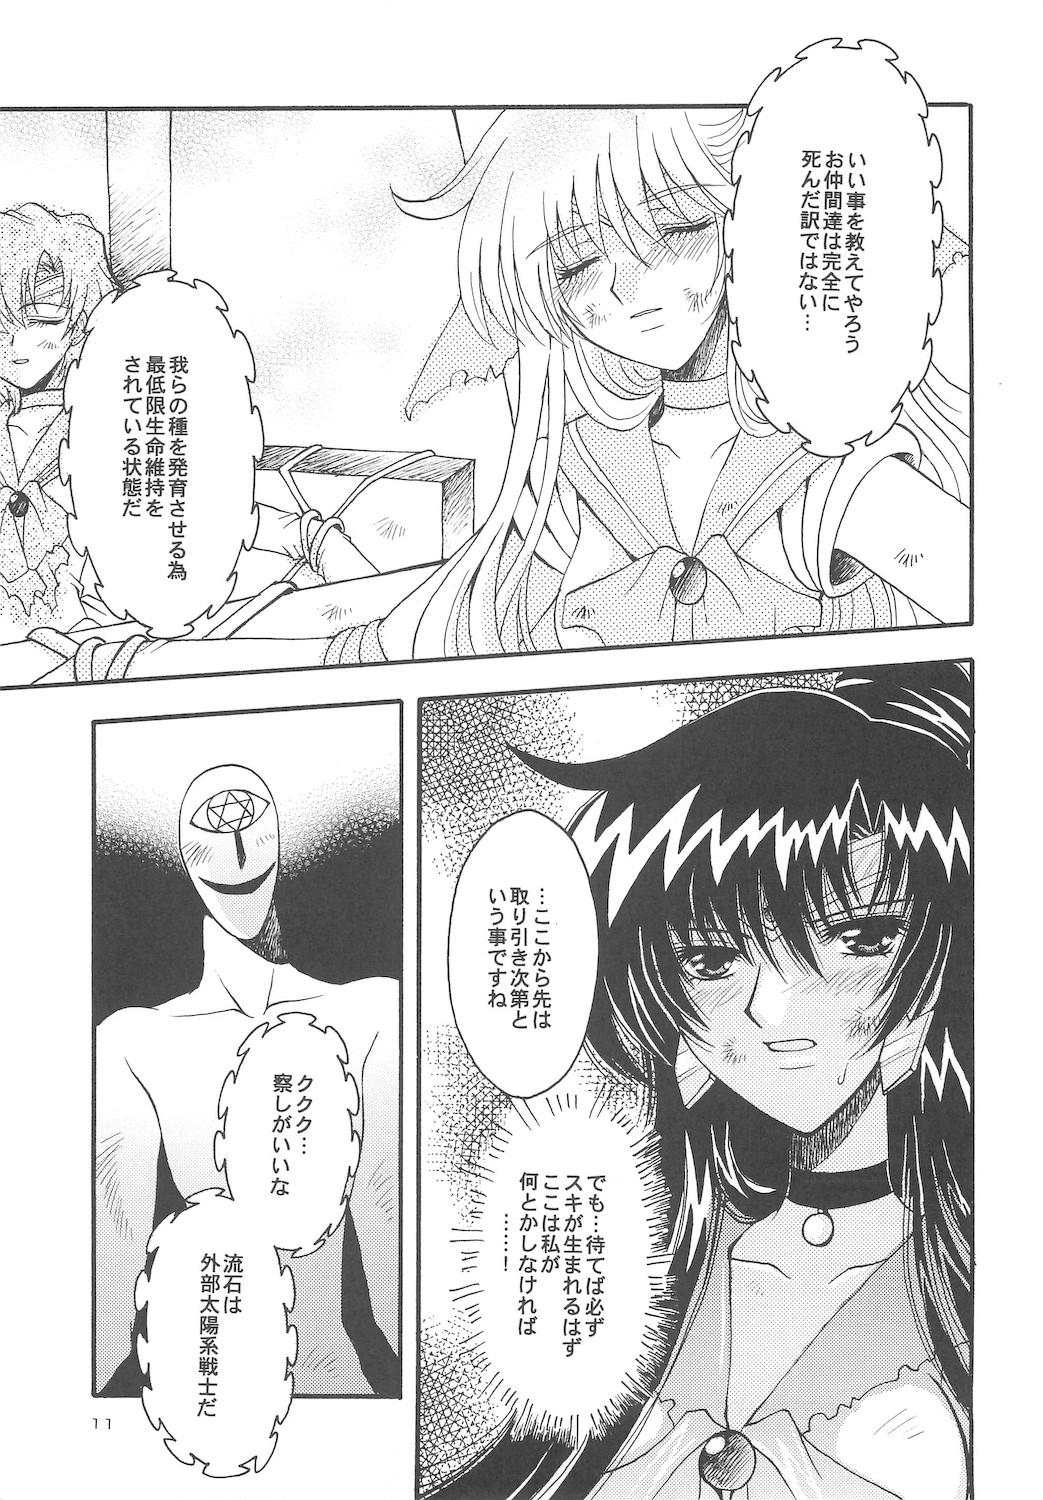 Massive Owaru Sekai dai 4 shou - Sailor moon Workout - Page 11